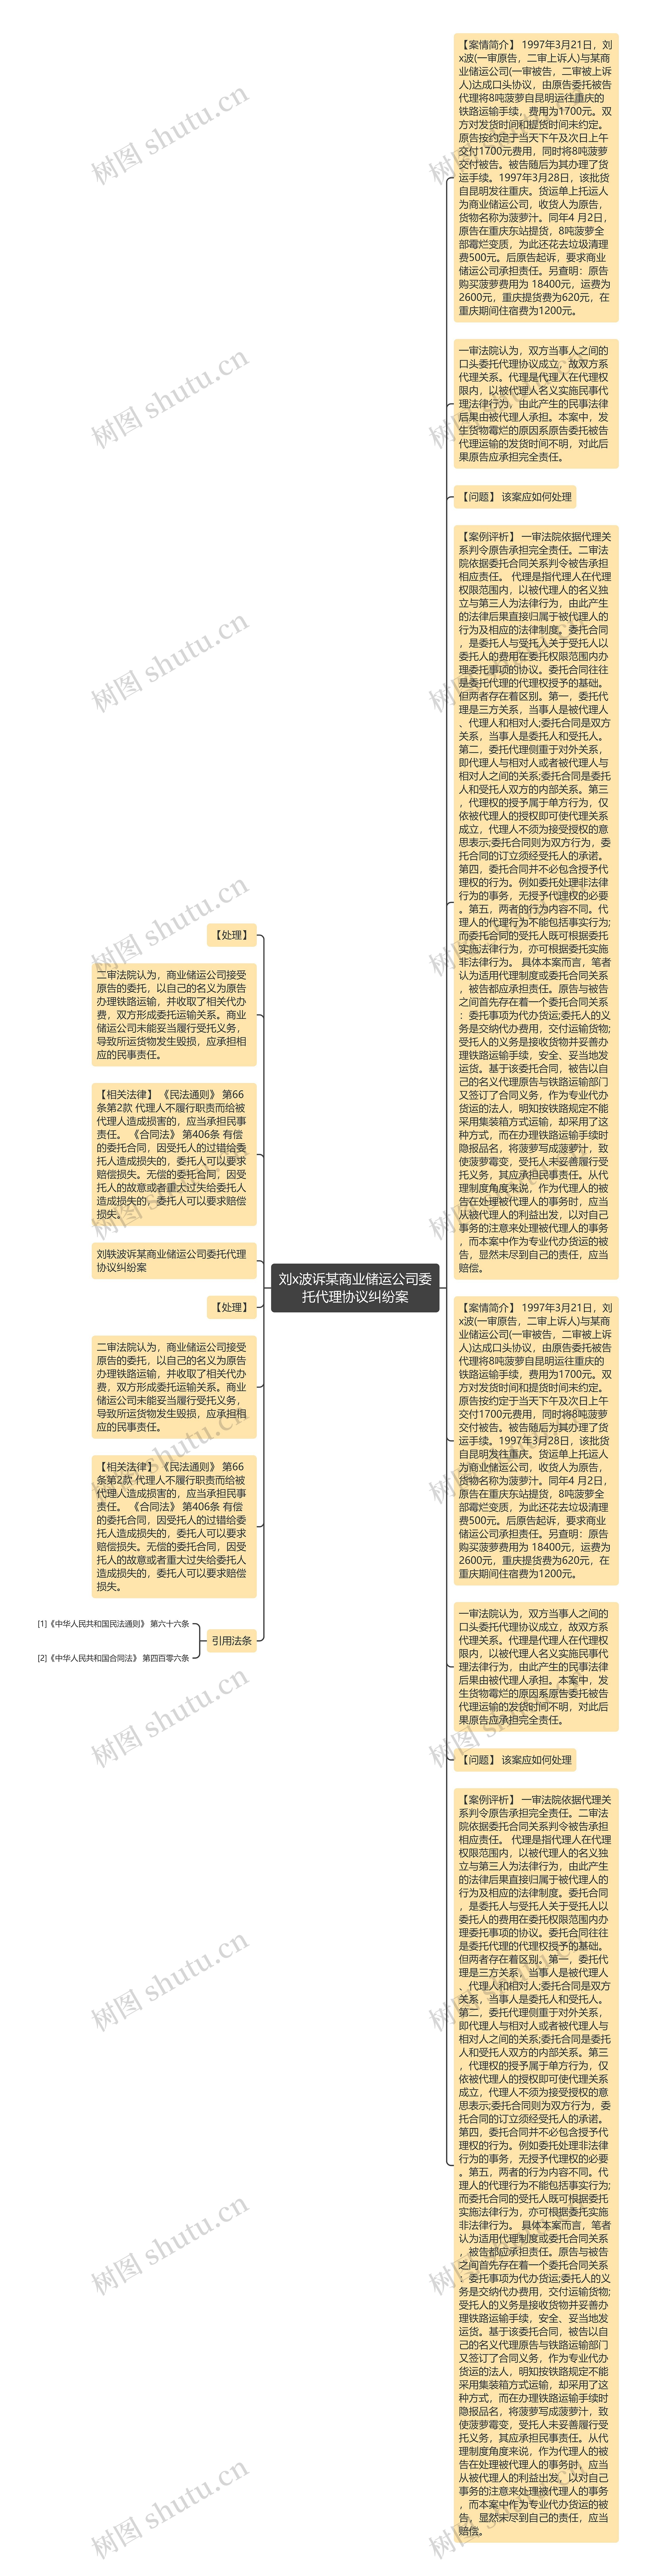 刘x波诉某商业储运公司委托代理协议纠纷案